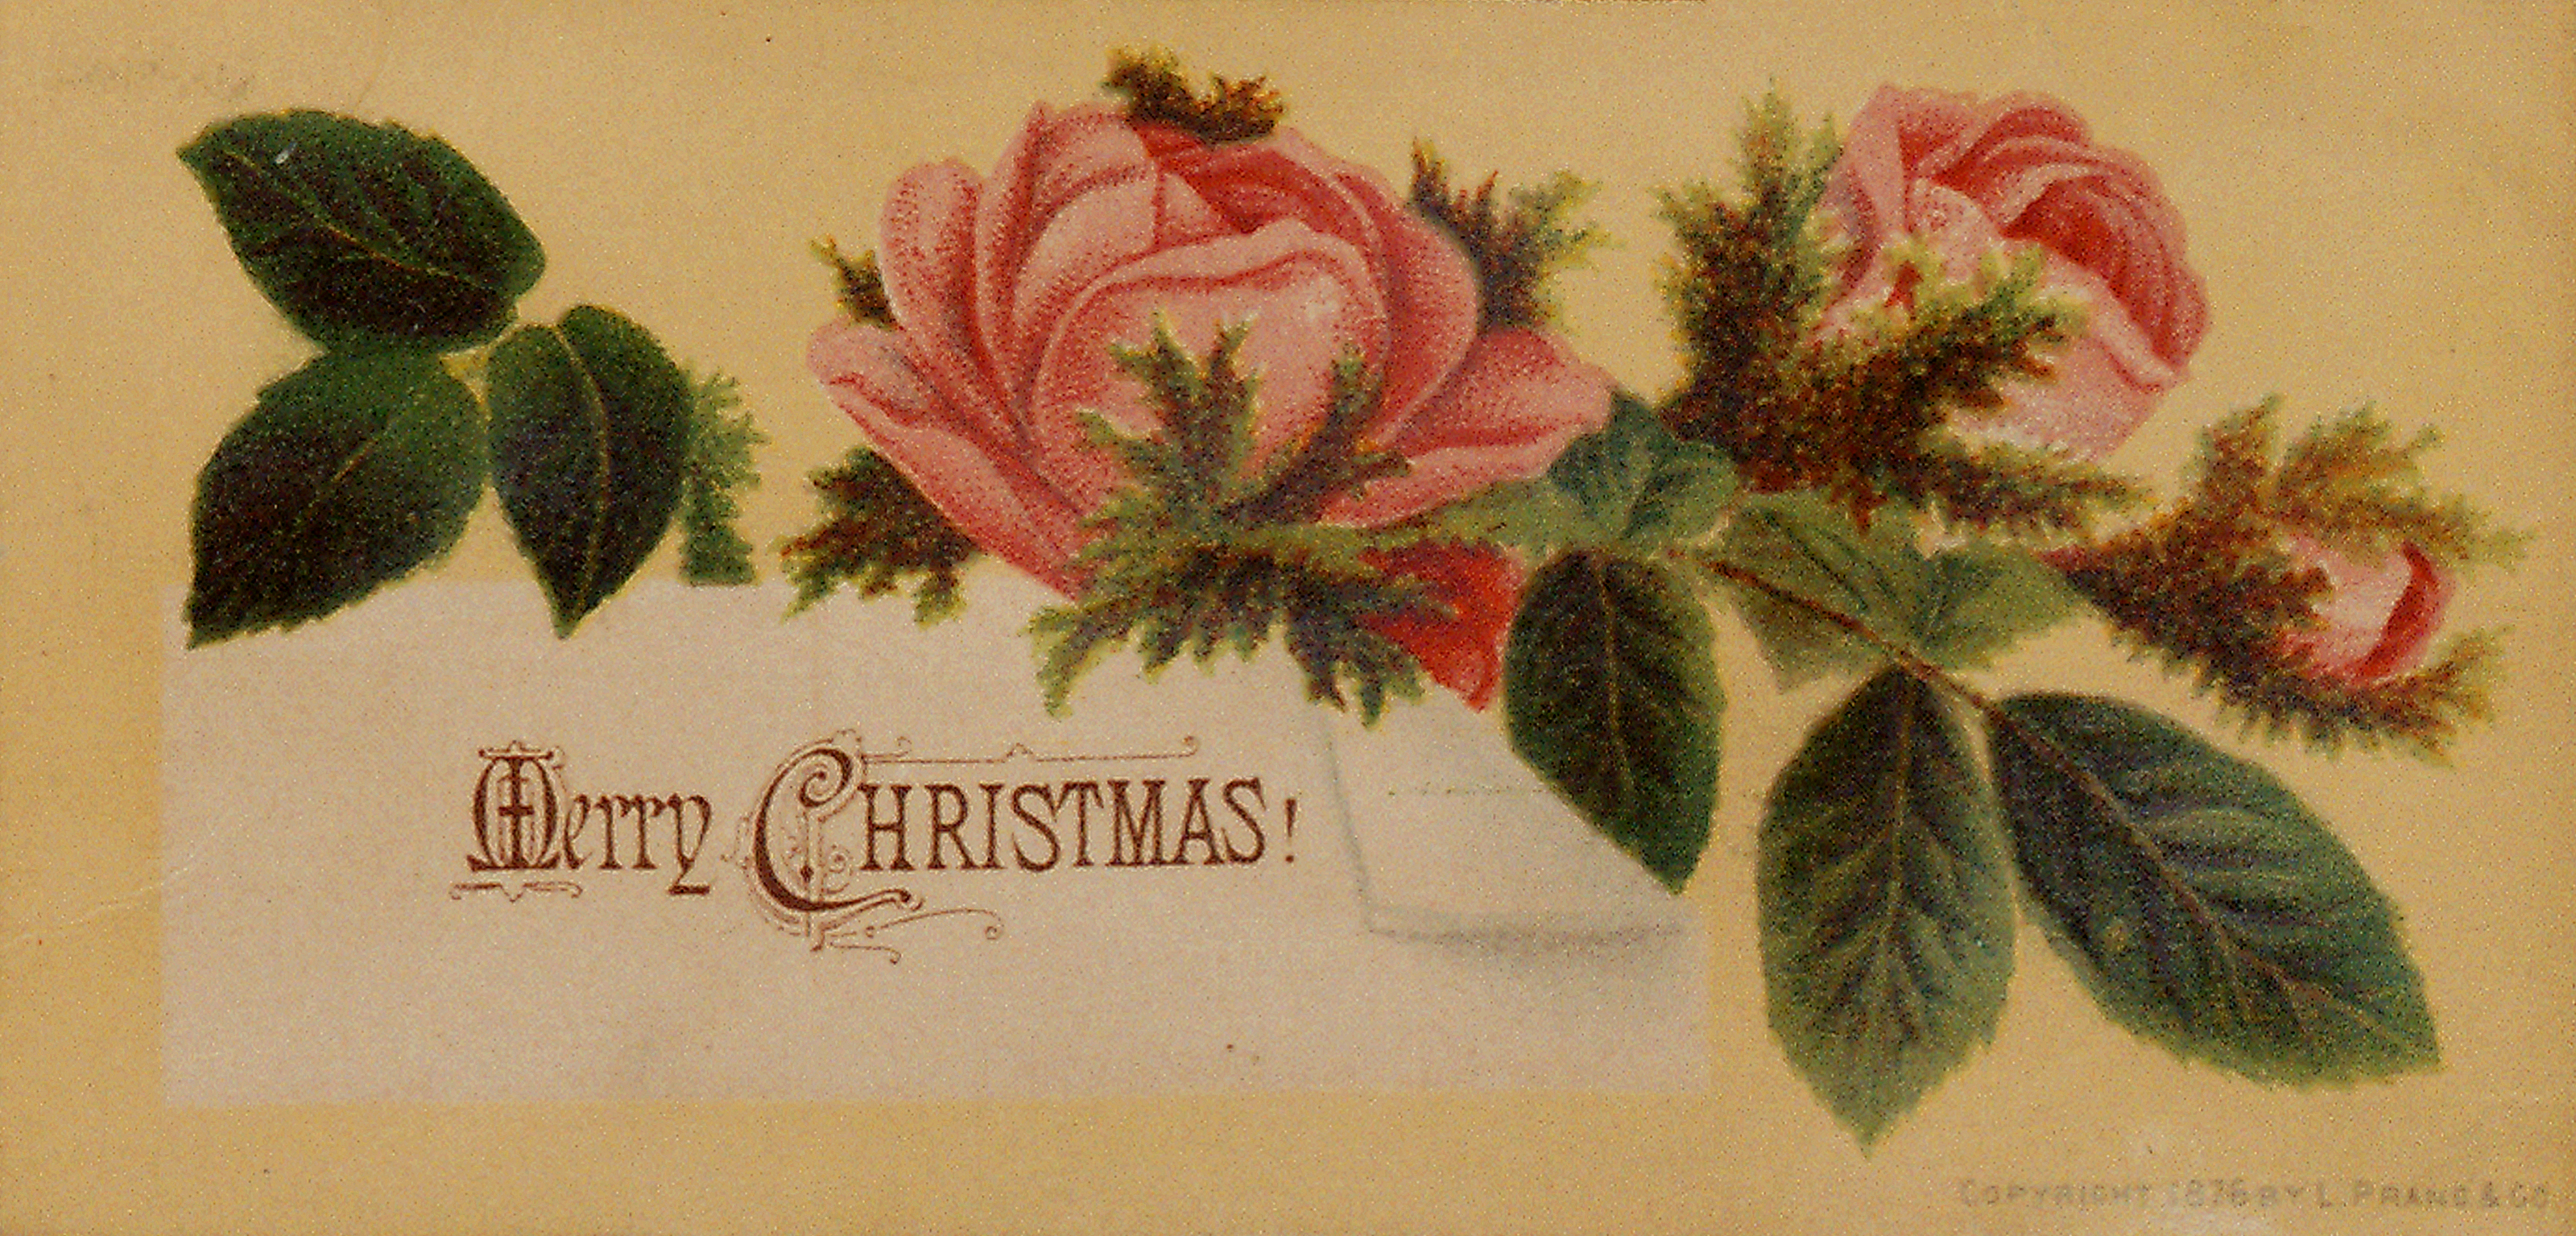 prang-Christmas-card